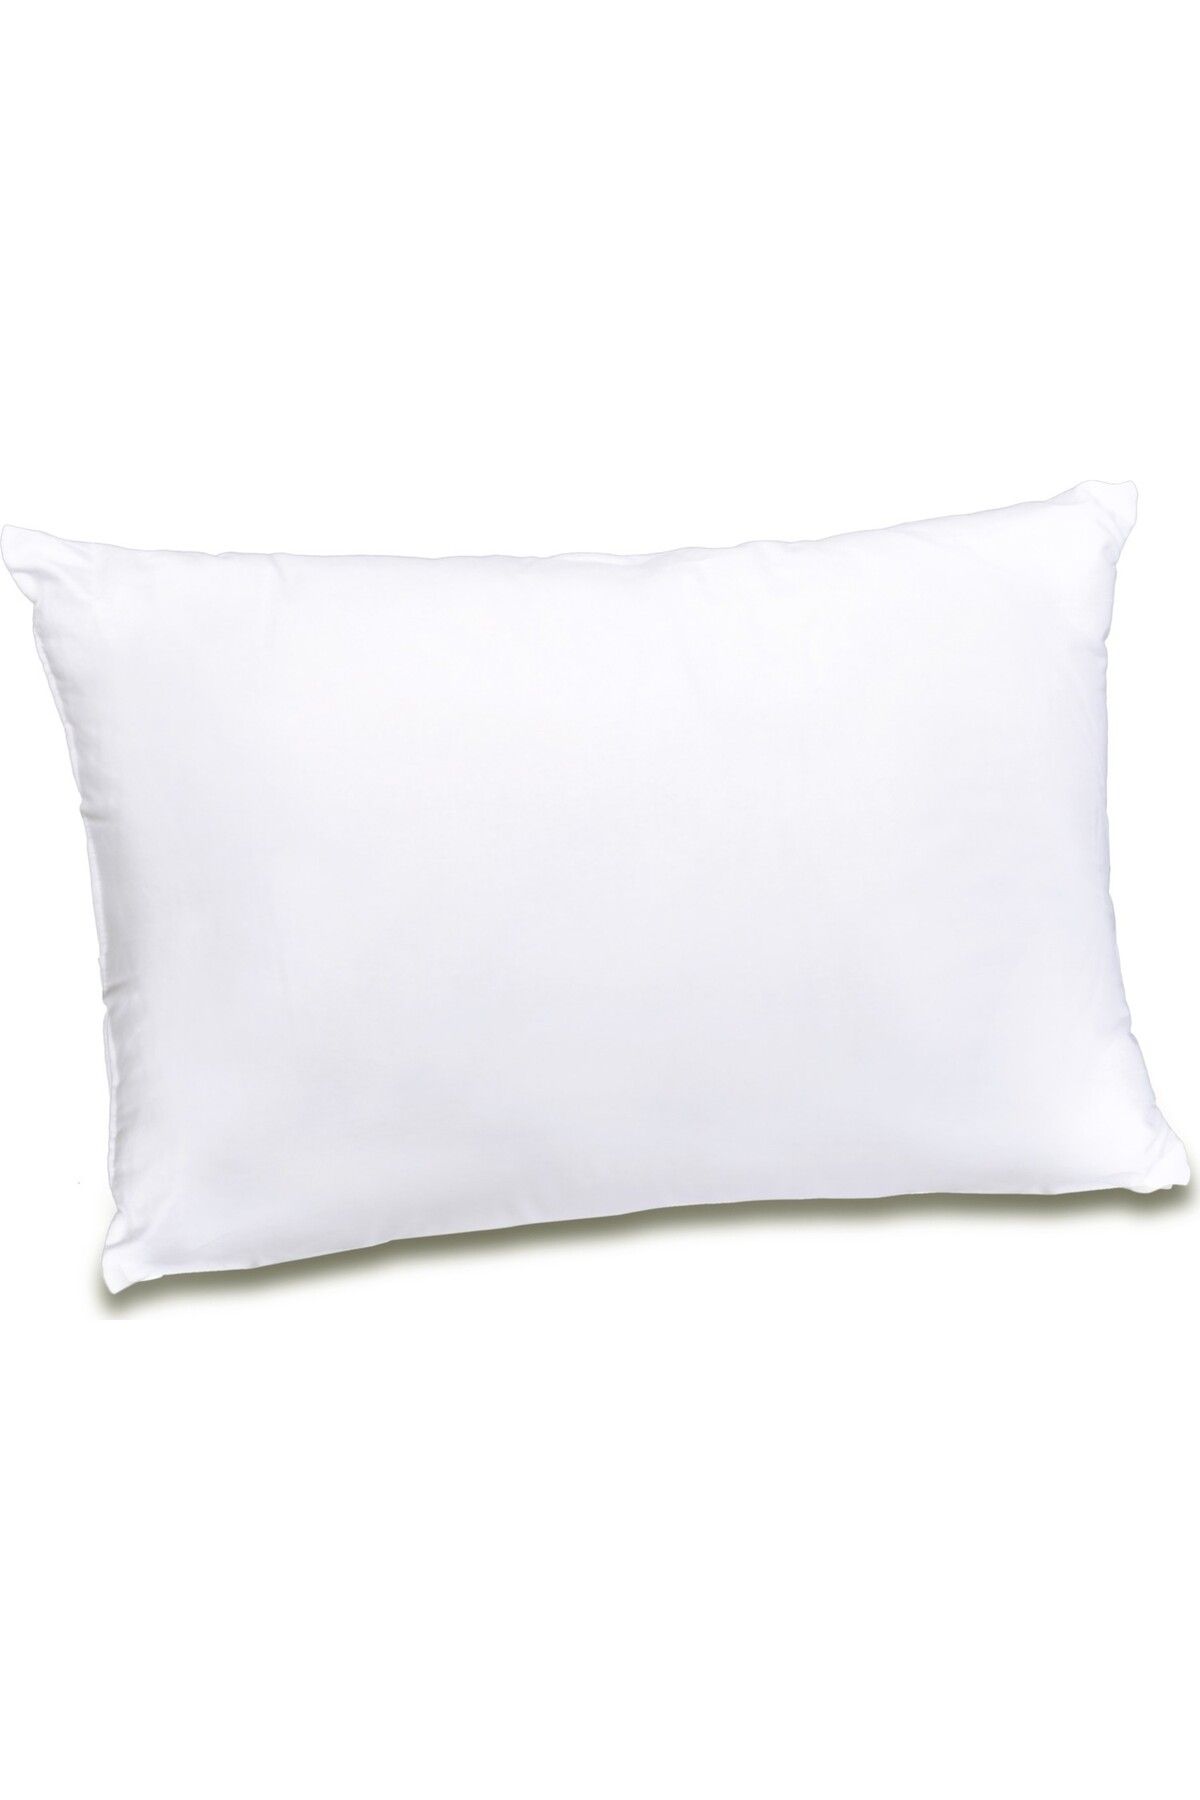 İzgi Concept Premium Bebek Yastığı %100 Silikon Dolgulu 35x45 250gr - Premium Quality Baby Pillow